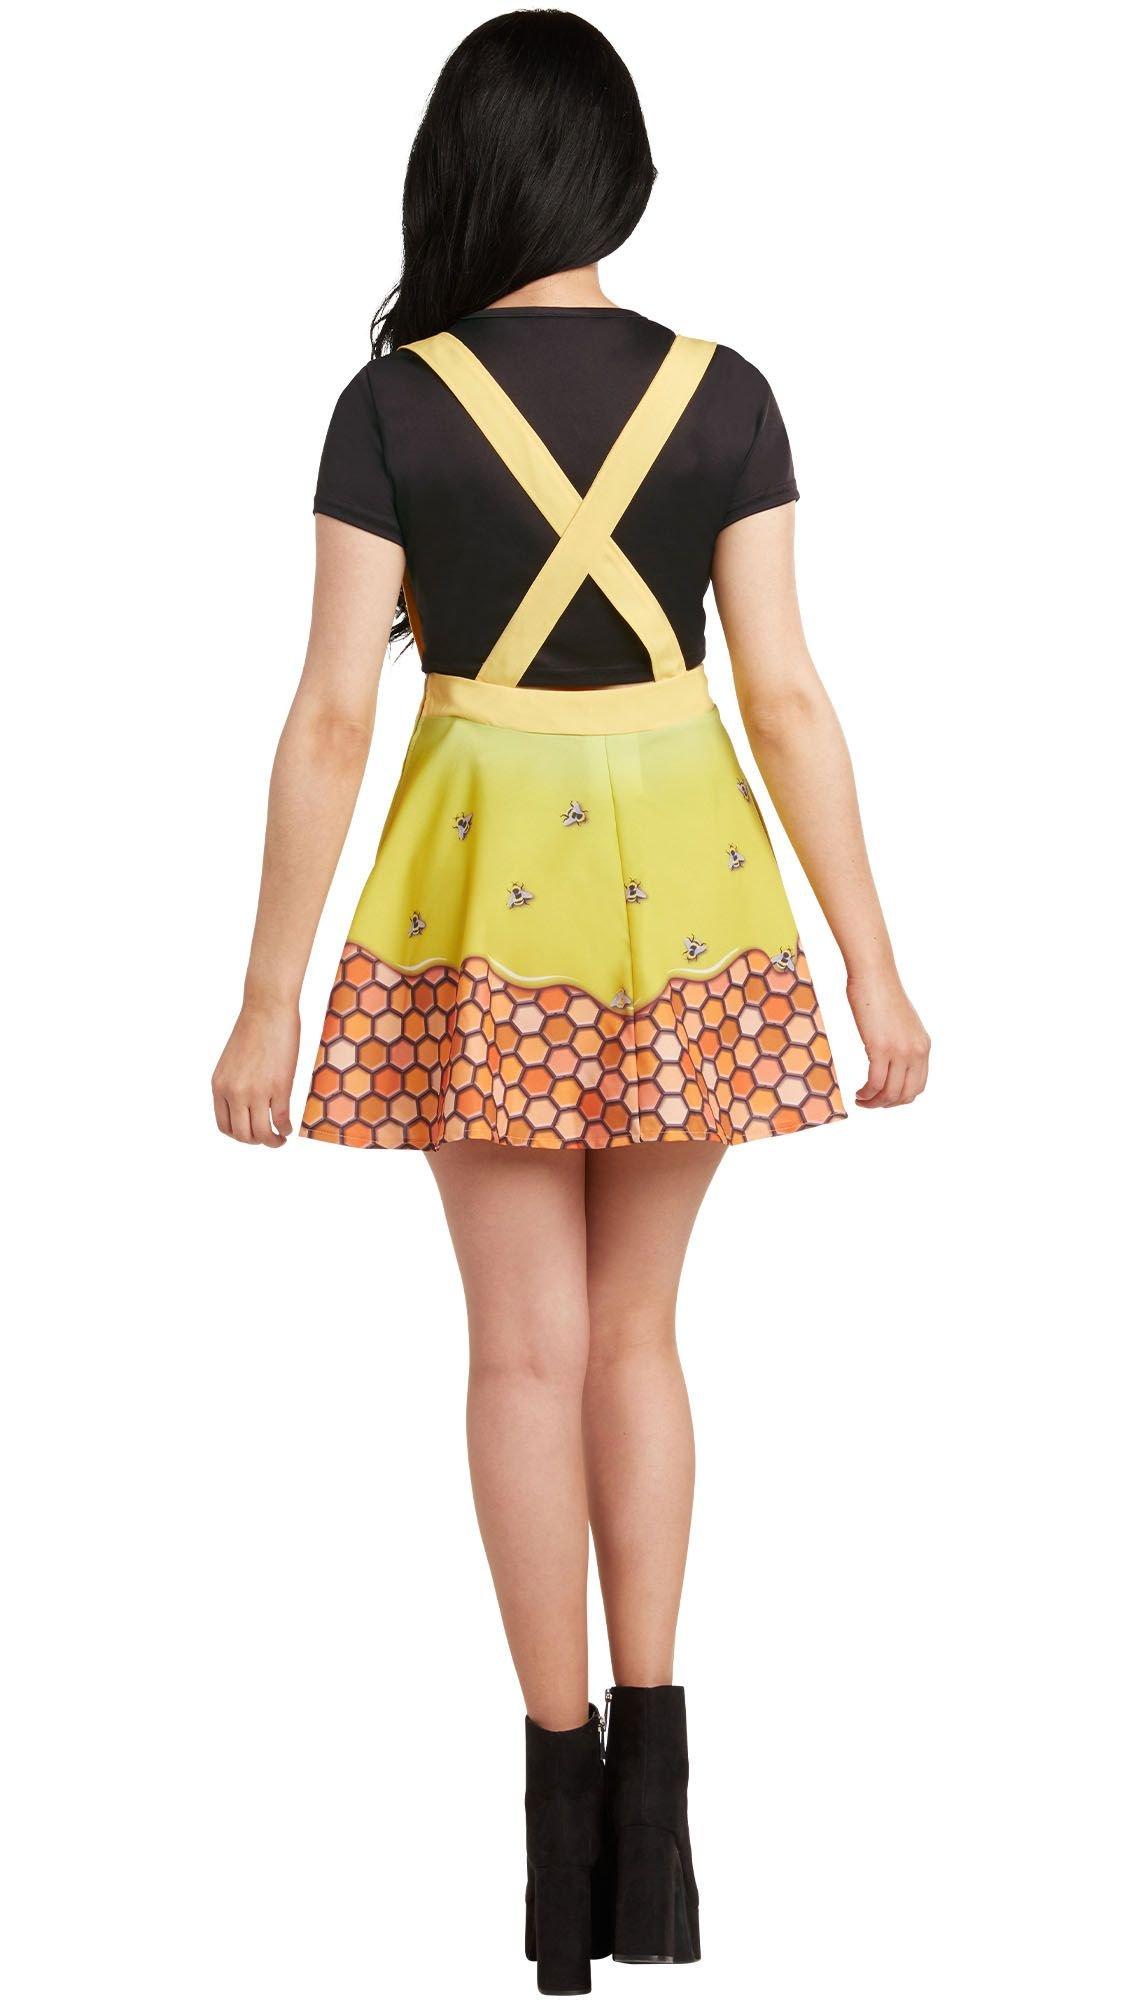 Honey Girl Costume Kit for Adults